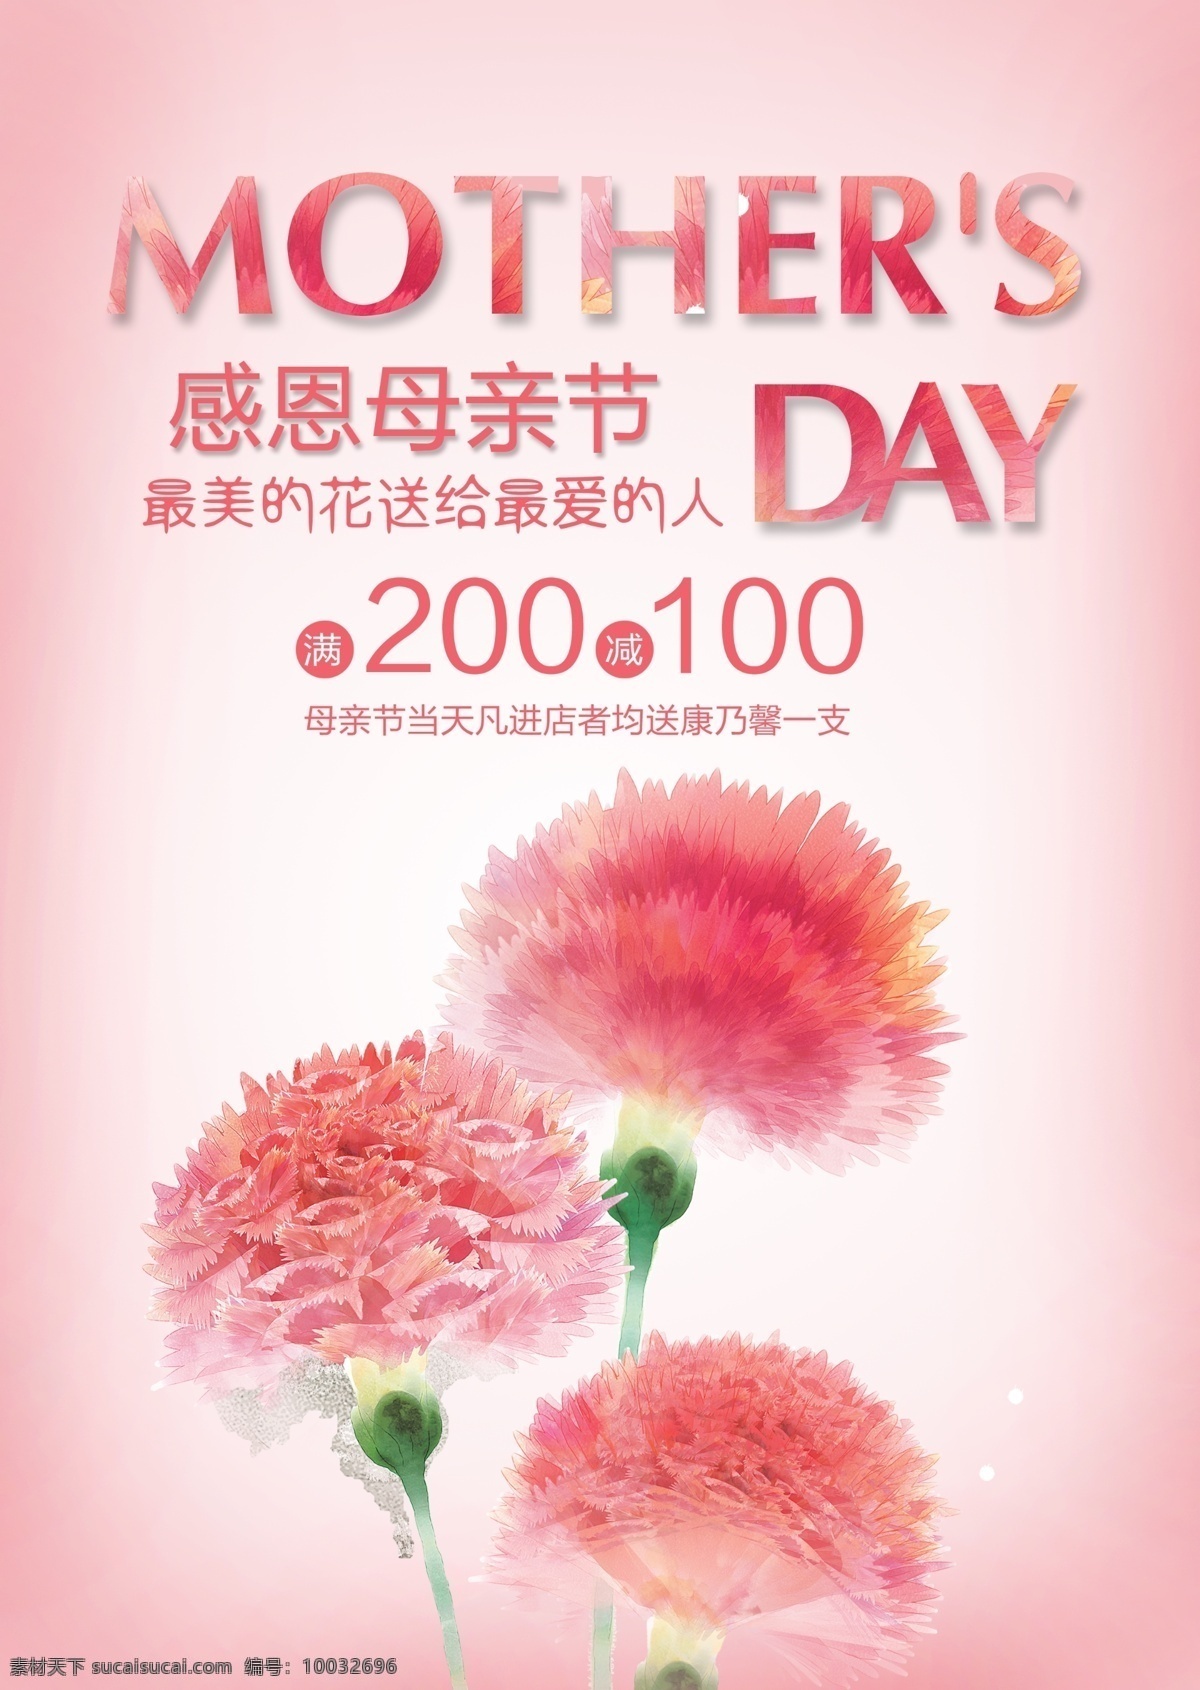 感恩母亲节 母亲节促销 母亲节背景 母亲 母亲节活动 母亲节宣传单 母亲节感恩 母亲节来了